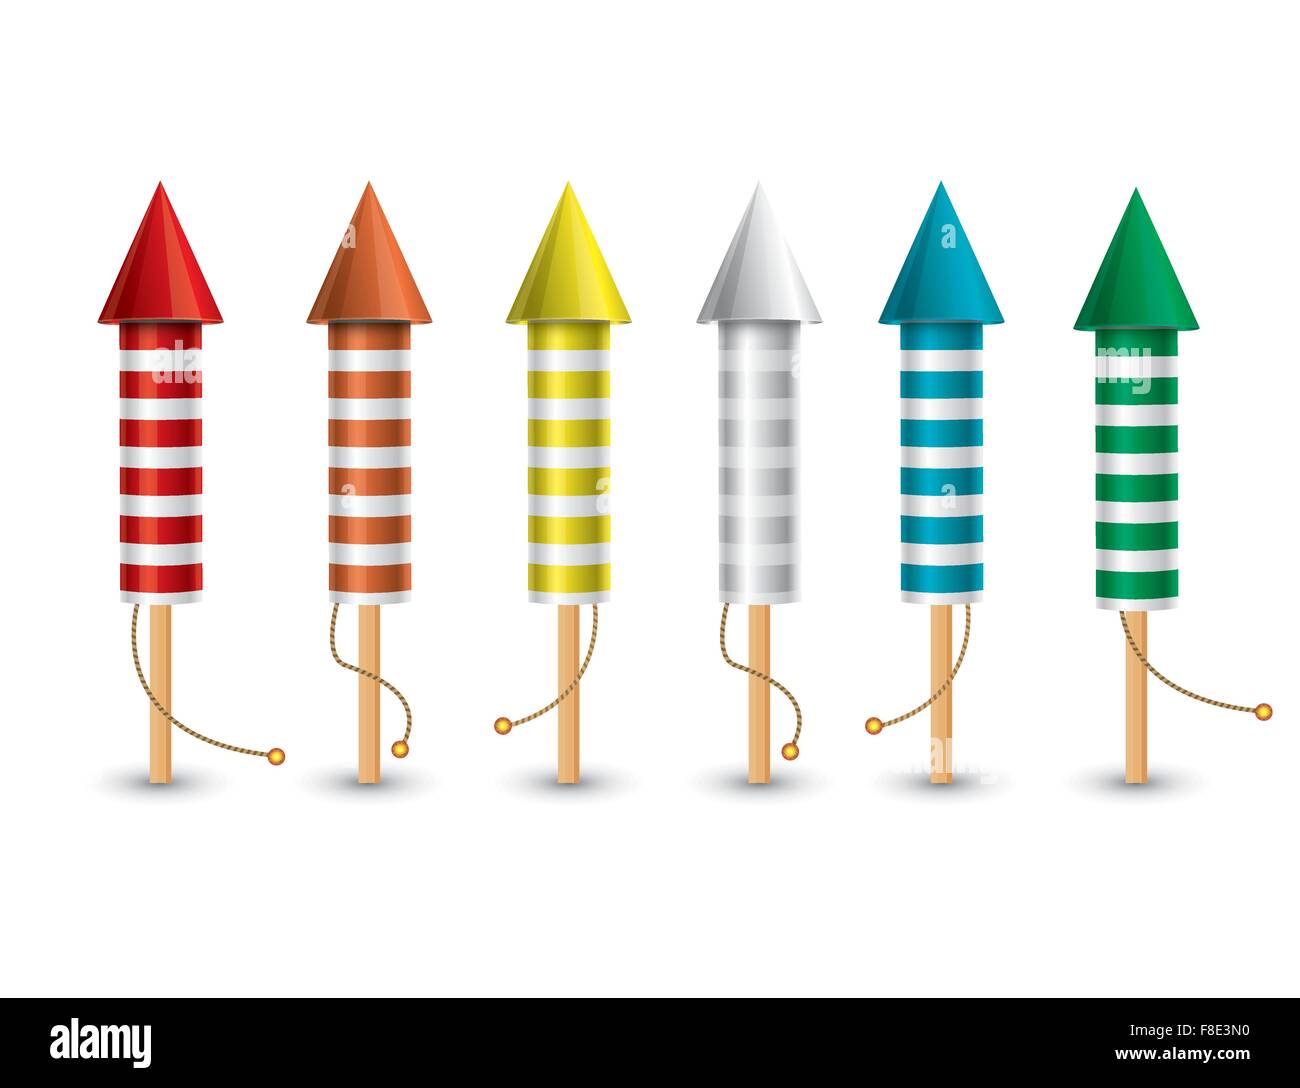 Eingestellt von isolierten pyrotechnische Raketen auf weißem Hintergrund. Vektor-Illustration. Sammlung von 6 Raketen, die andere Farbe. Stock Vektor